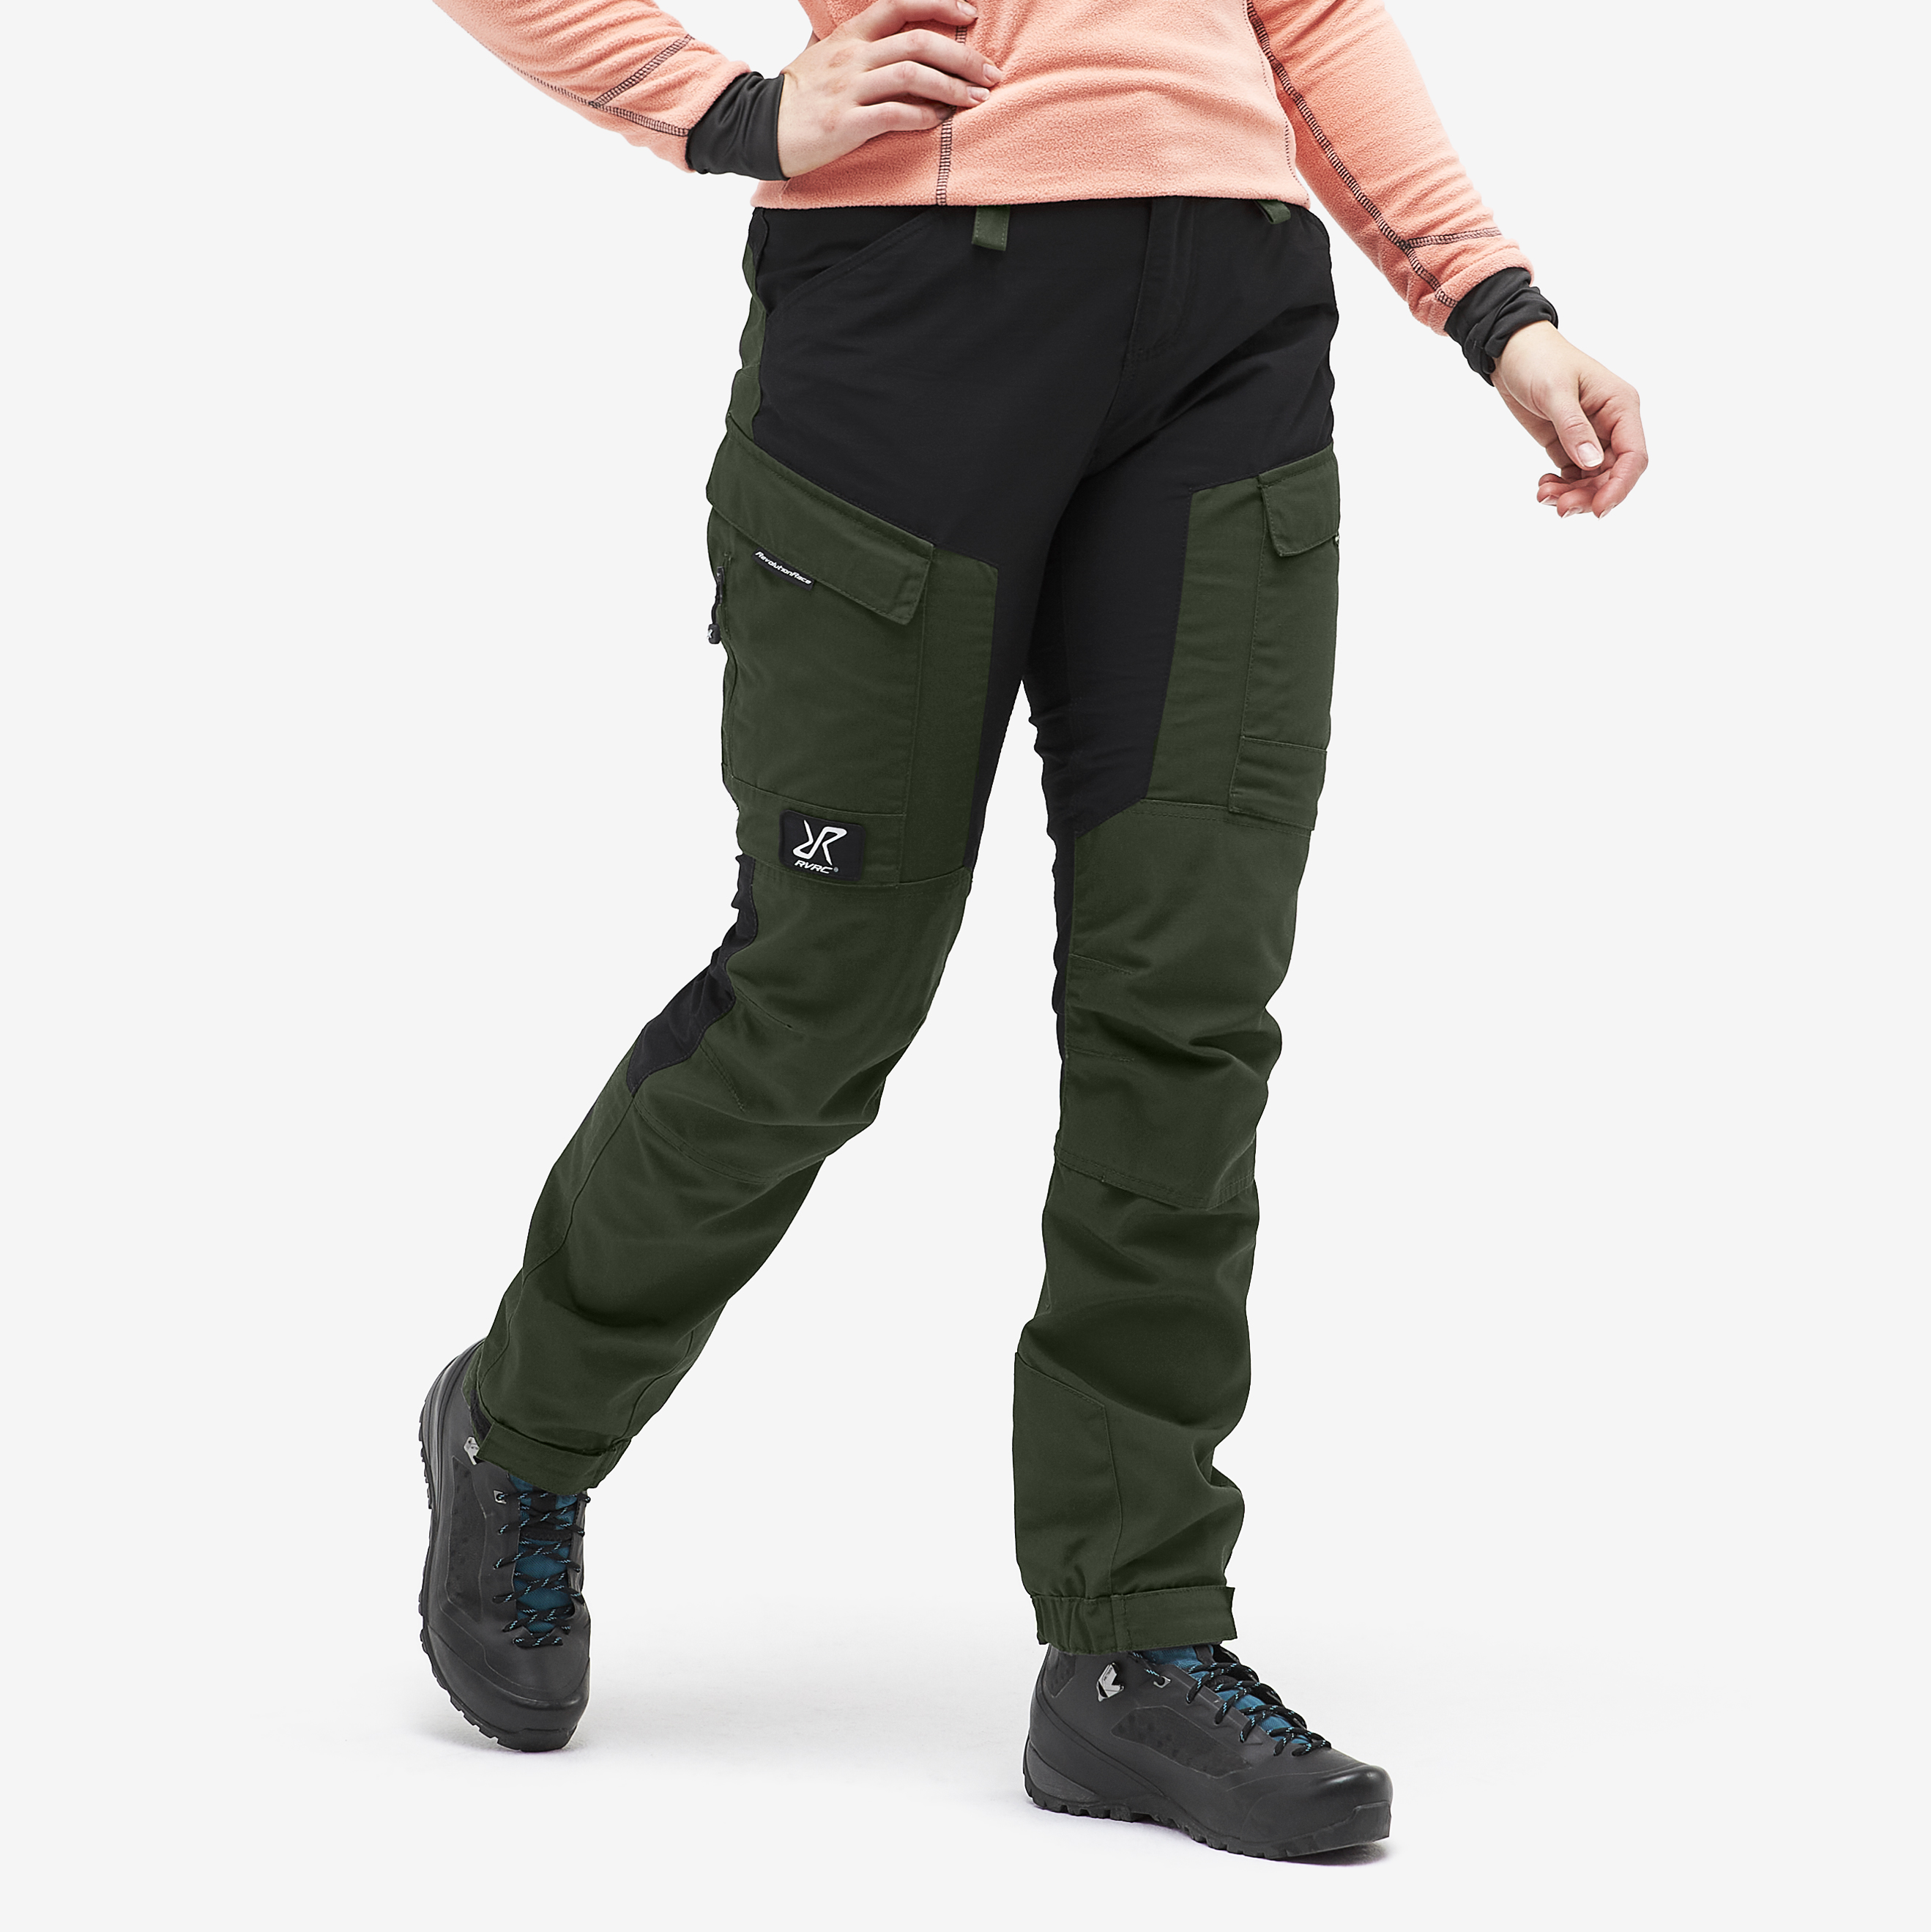 RVRC GP Short outdoor bukser for kvinder i grøn